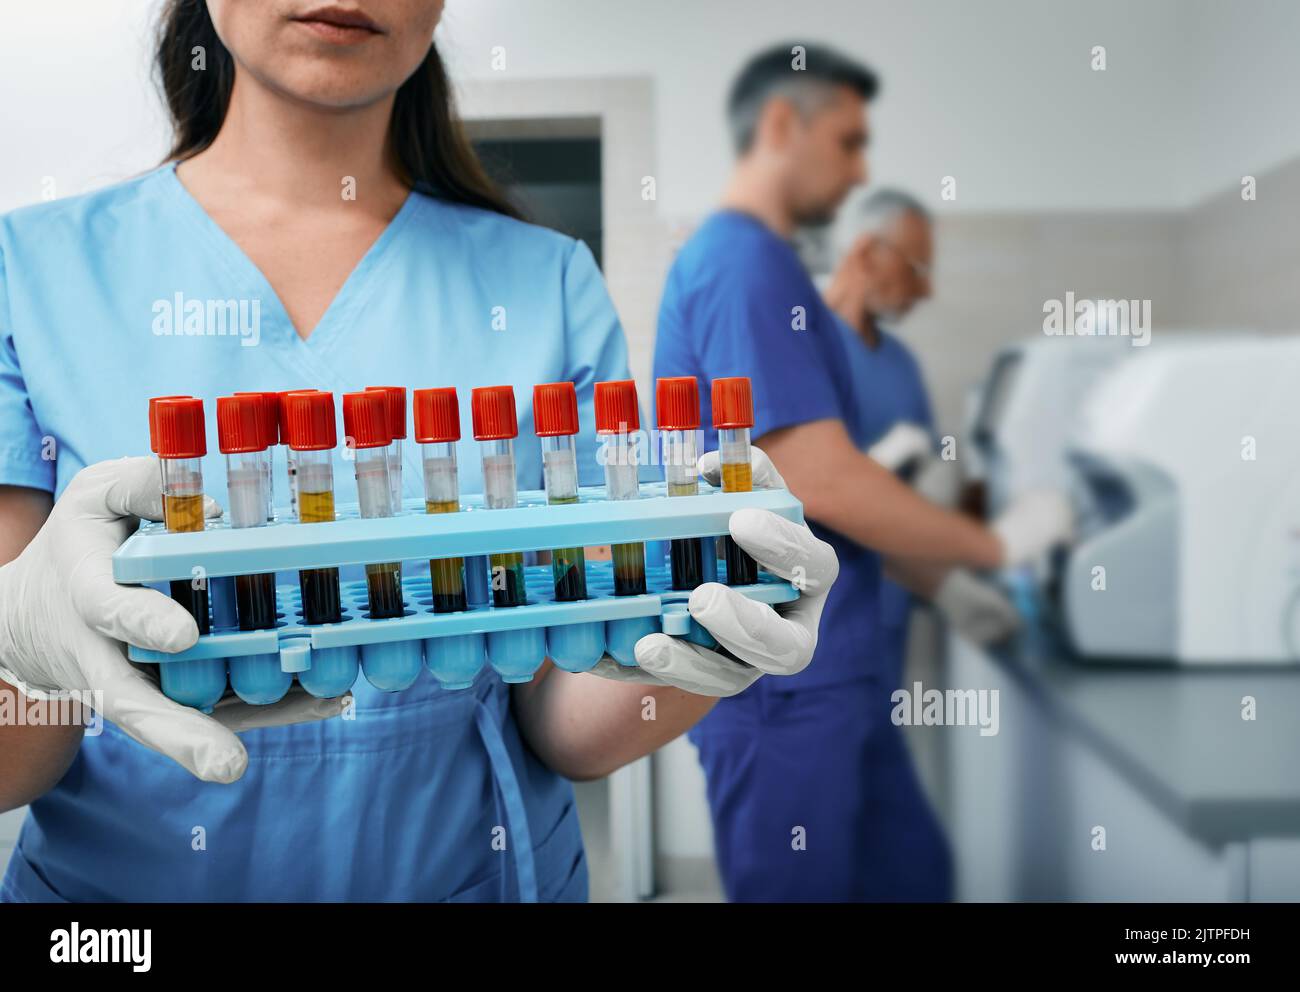 Portoir pour tubes à essai avec échantillons de sang dans les mains d'un technicien de laboratoire, gros plan dans un laboratoire médical moderne Banque D'Images